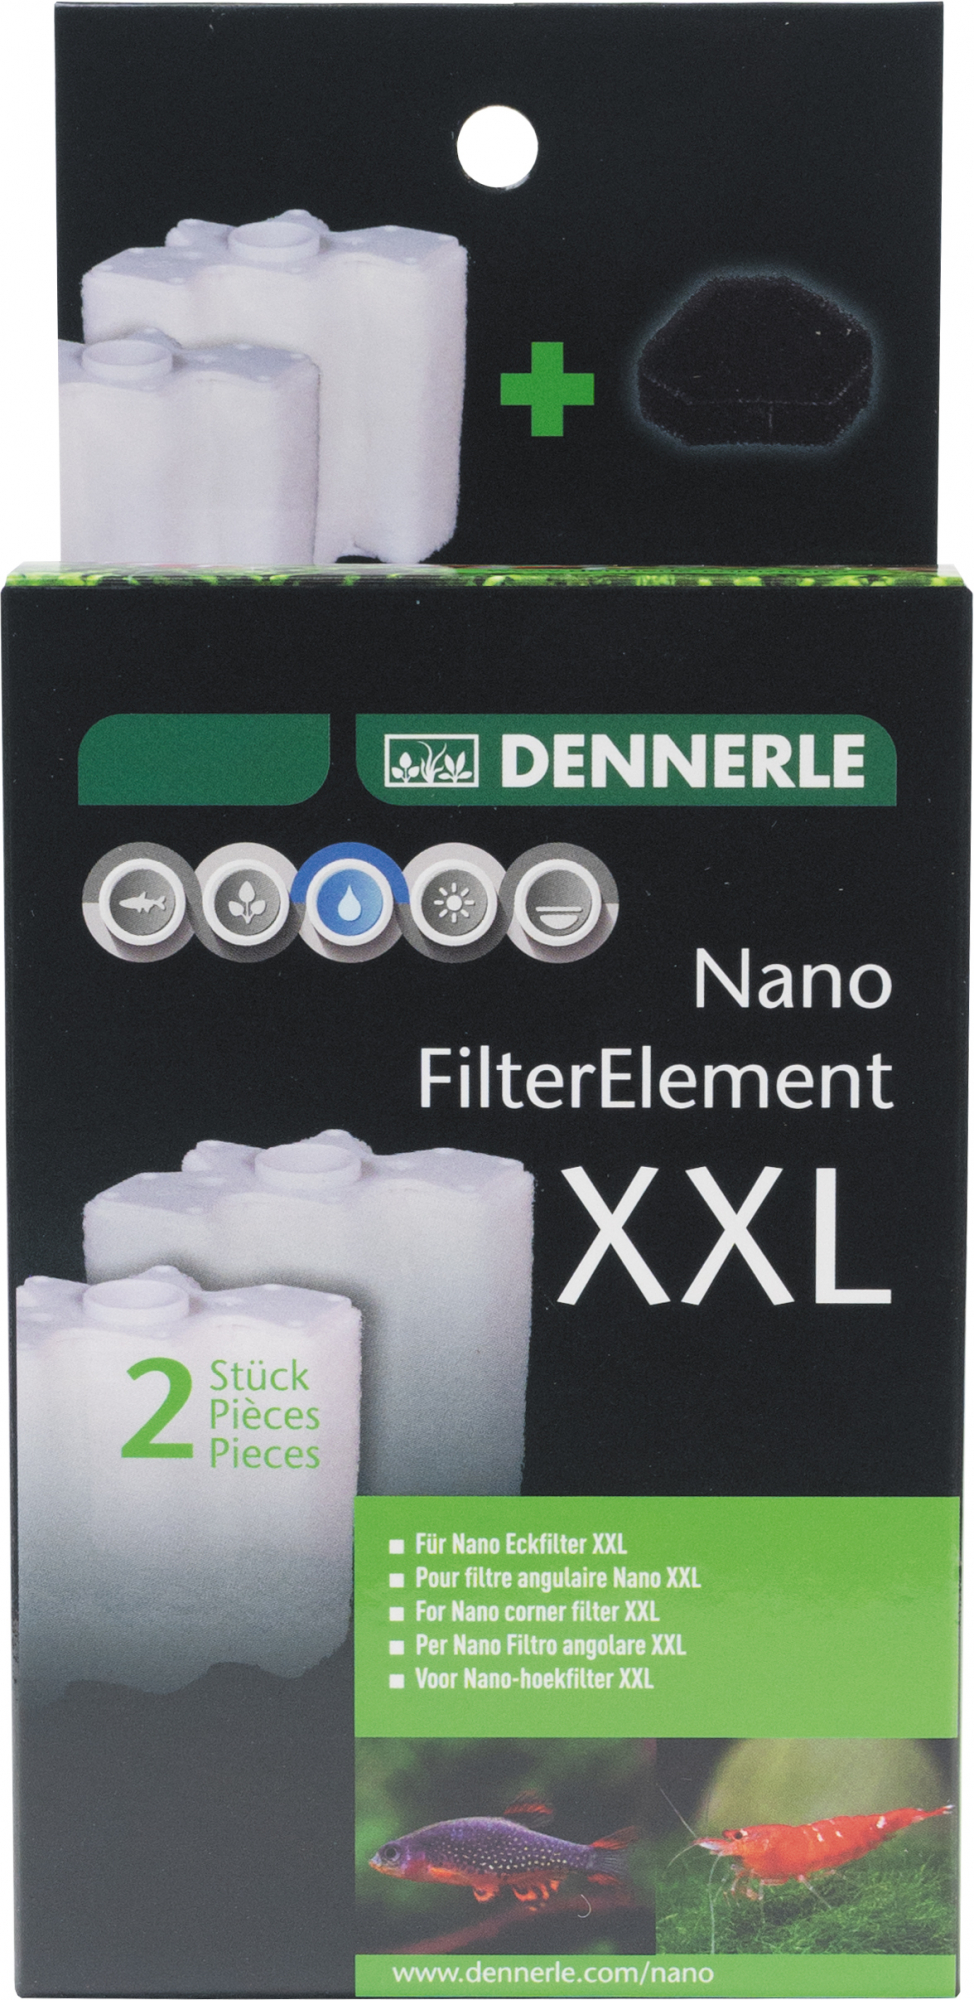 Dennerle Nano FilterElement 100 cartucce per filtro angolare